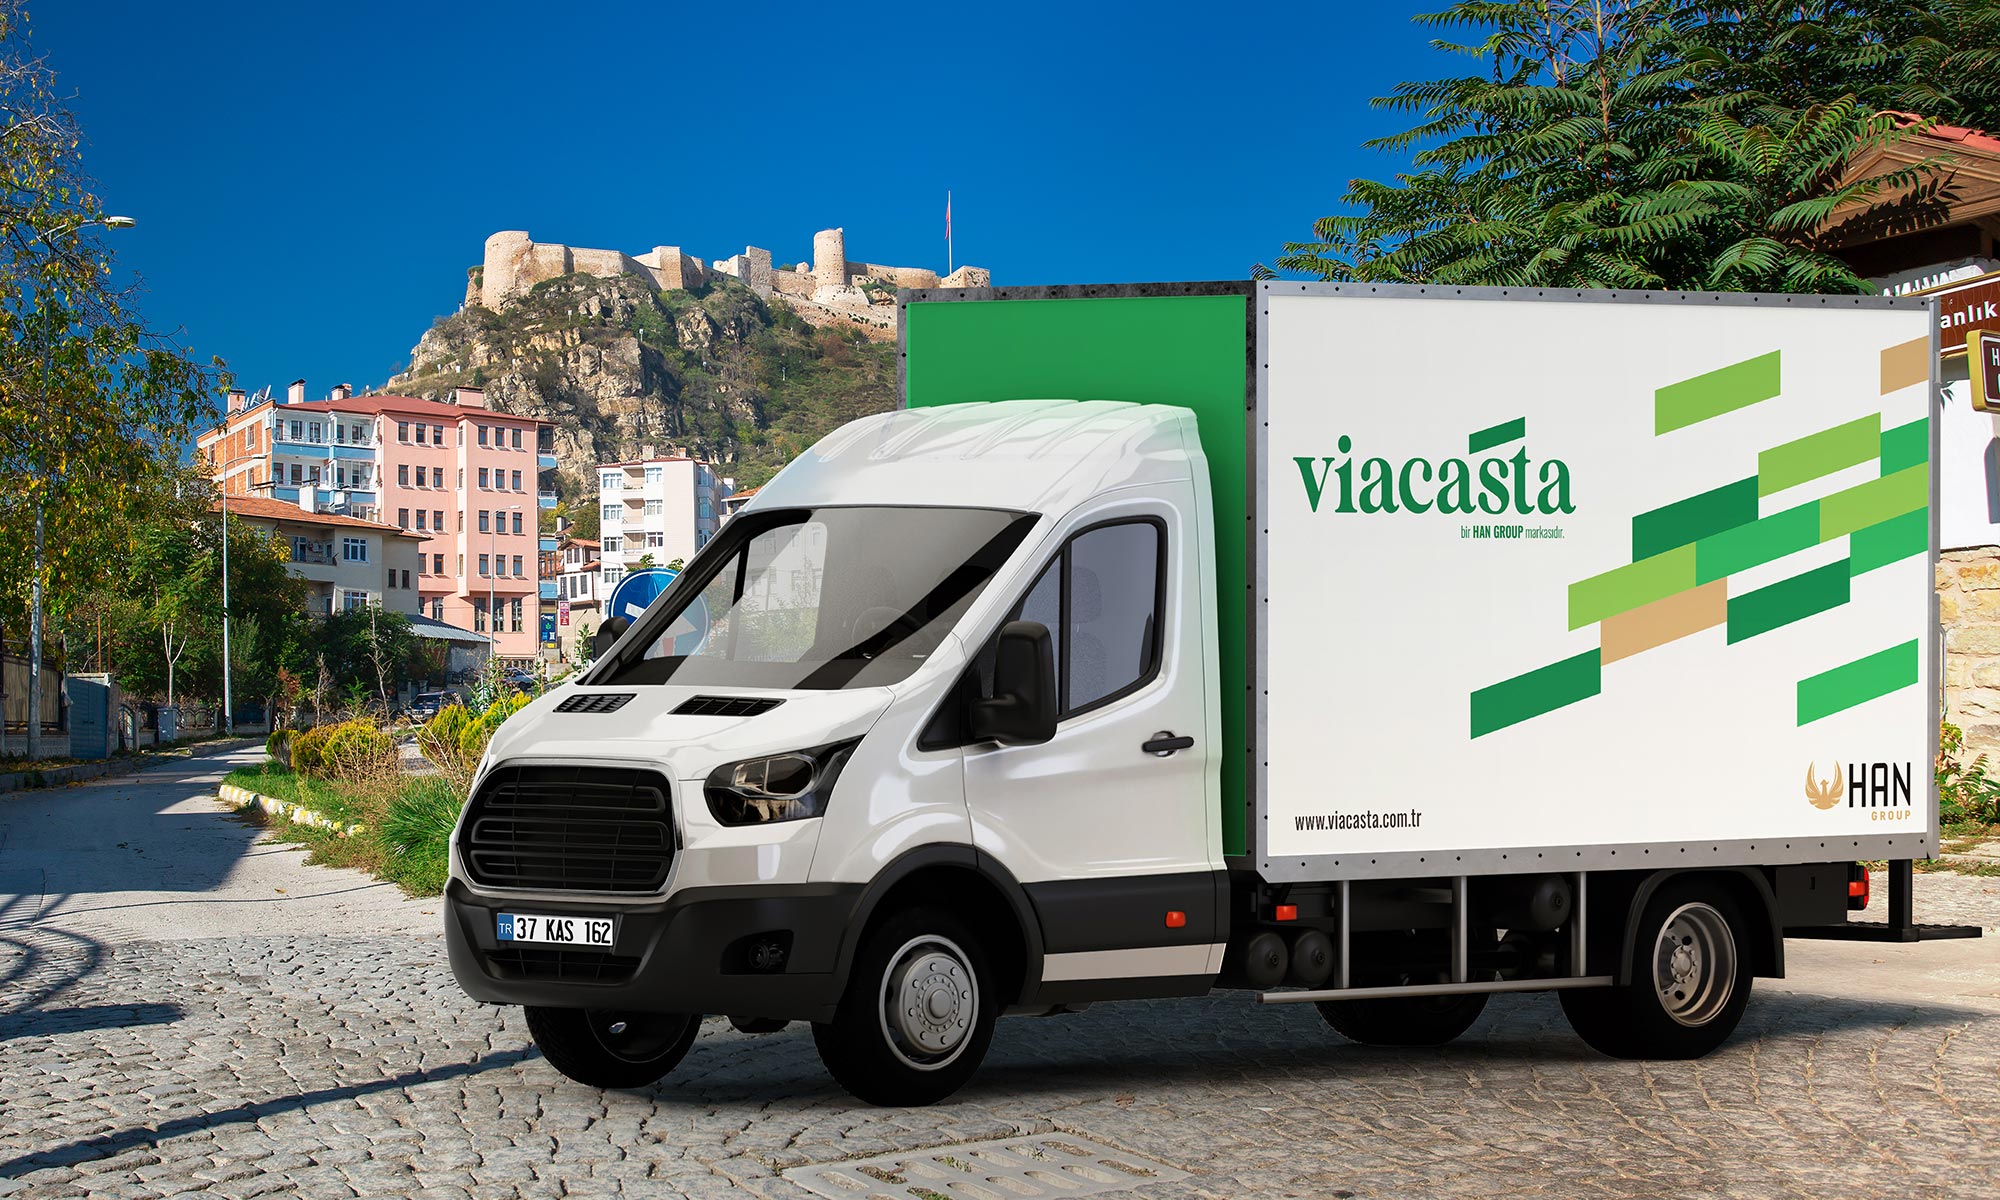 Viacasta Araç Giydirme - KONSEPTİZ Reklam Ajansı İzmir